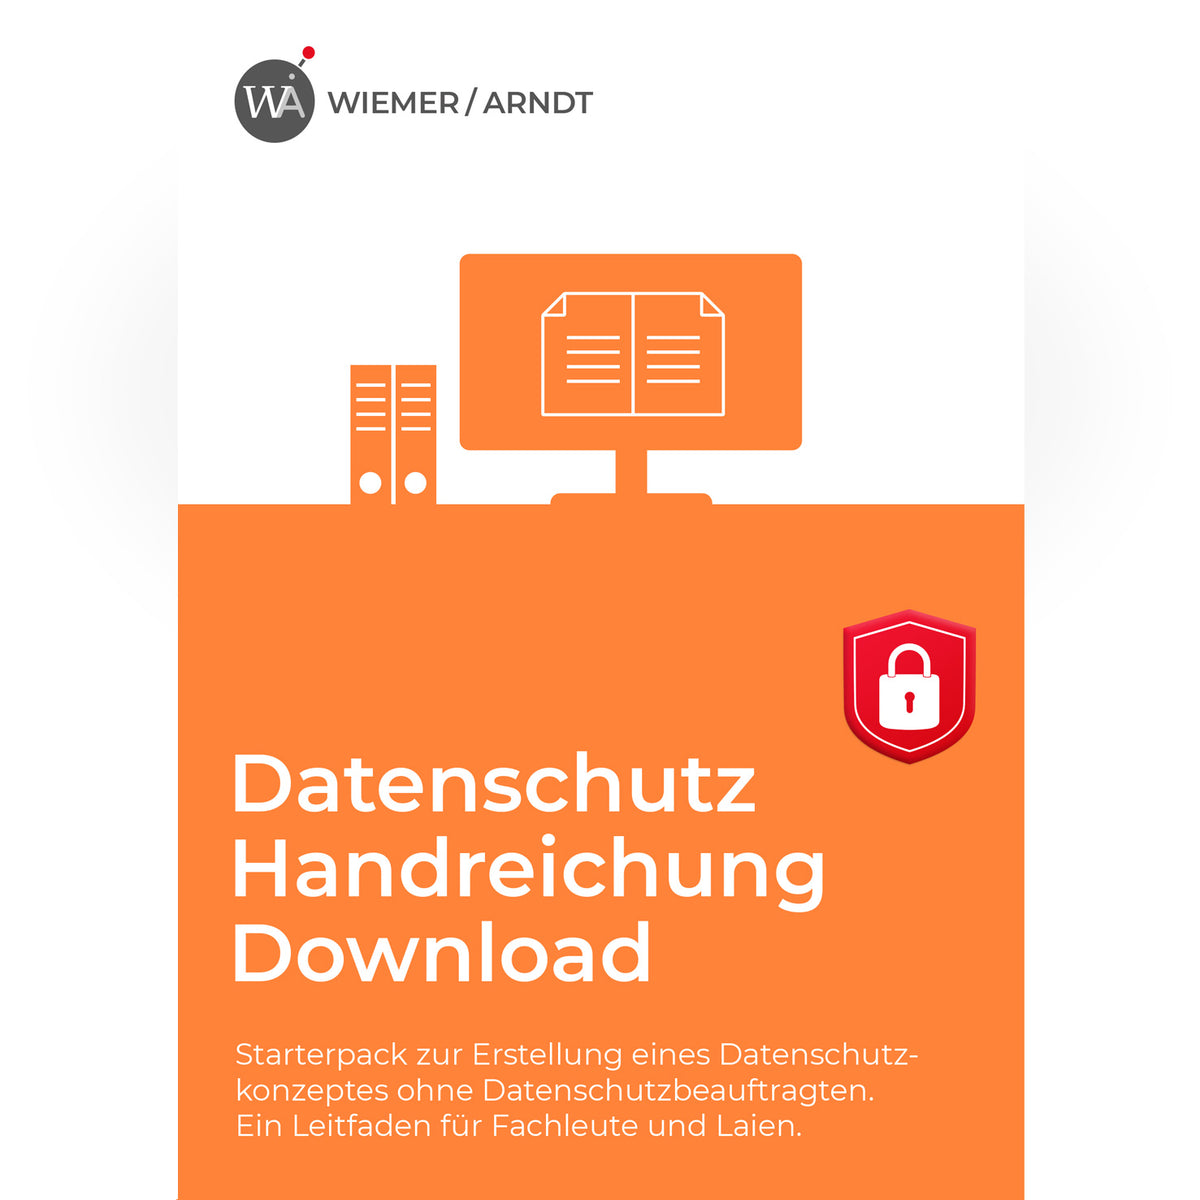 Datenschutz Handreichung Download